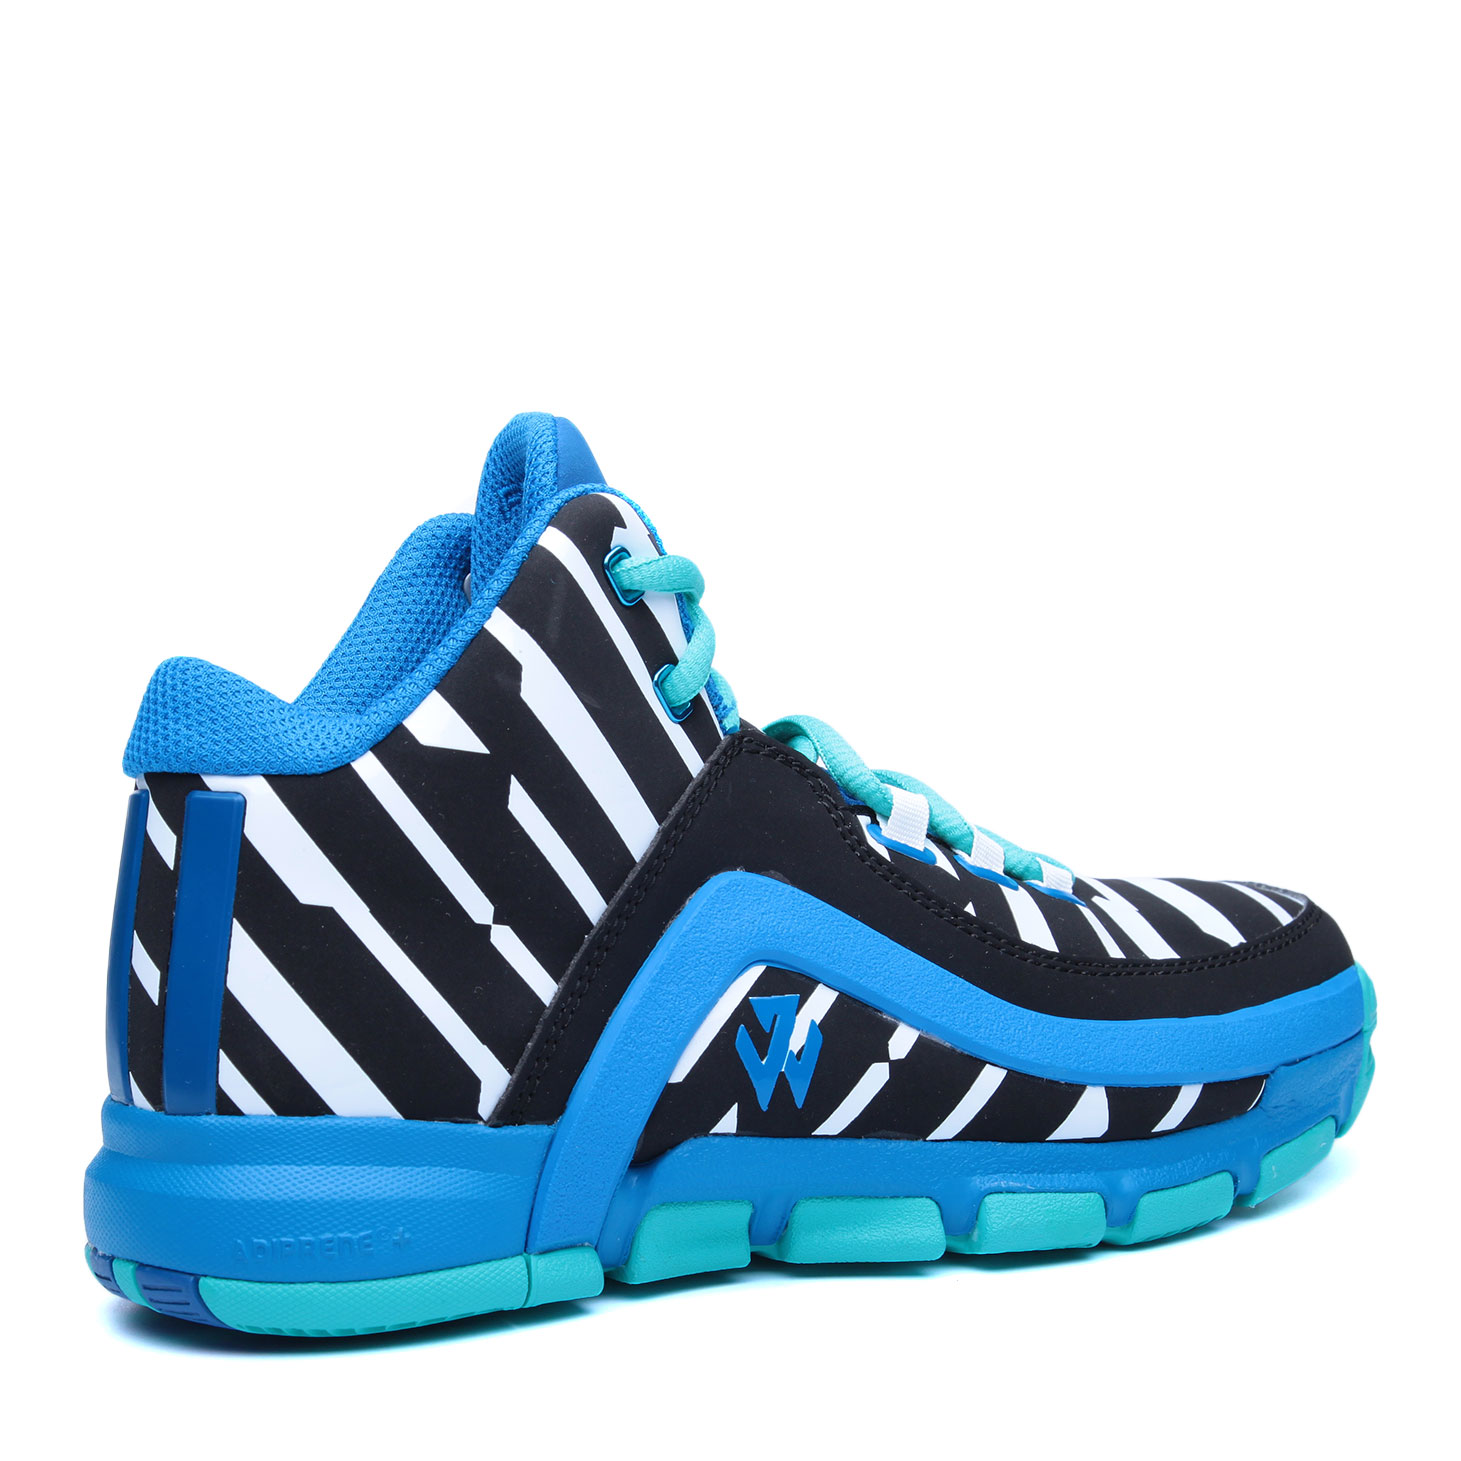 детские голубые баскетбольные кроссовки adidas J Wall 2 J AQ8727 - цена, описание, фото 2